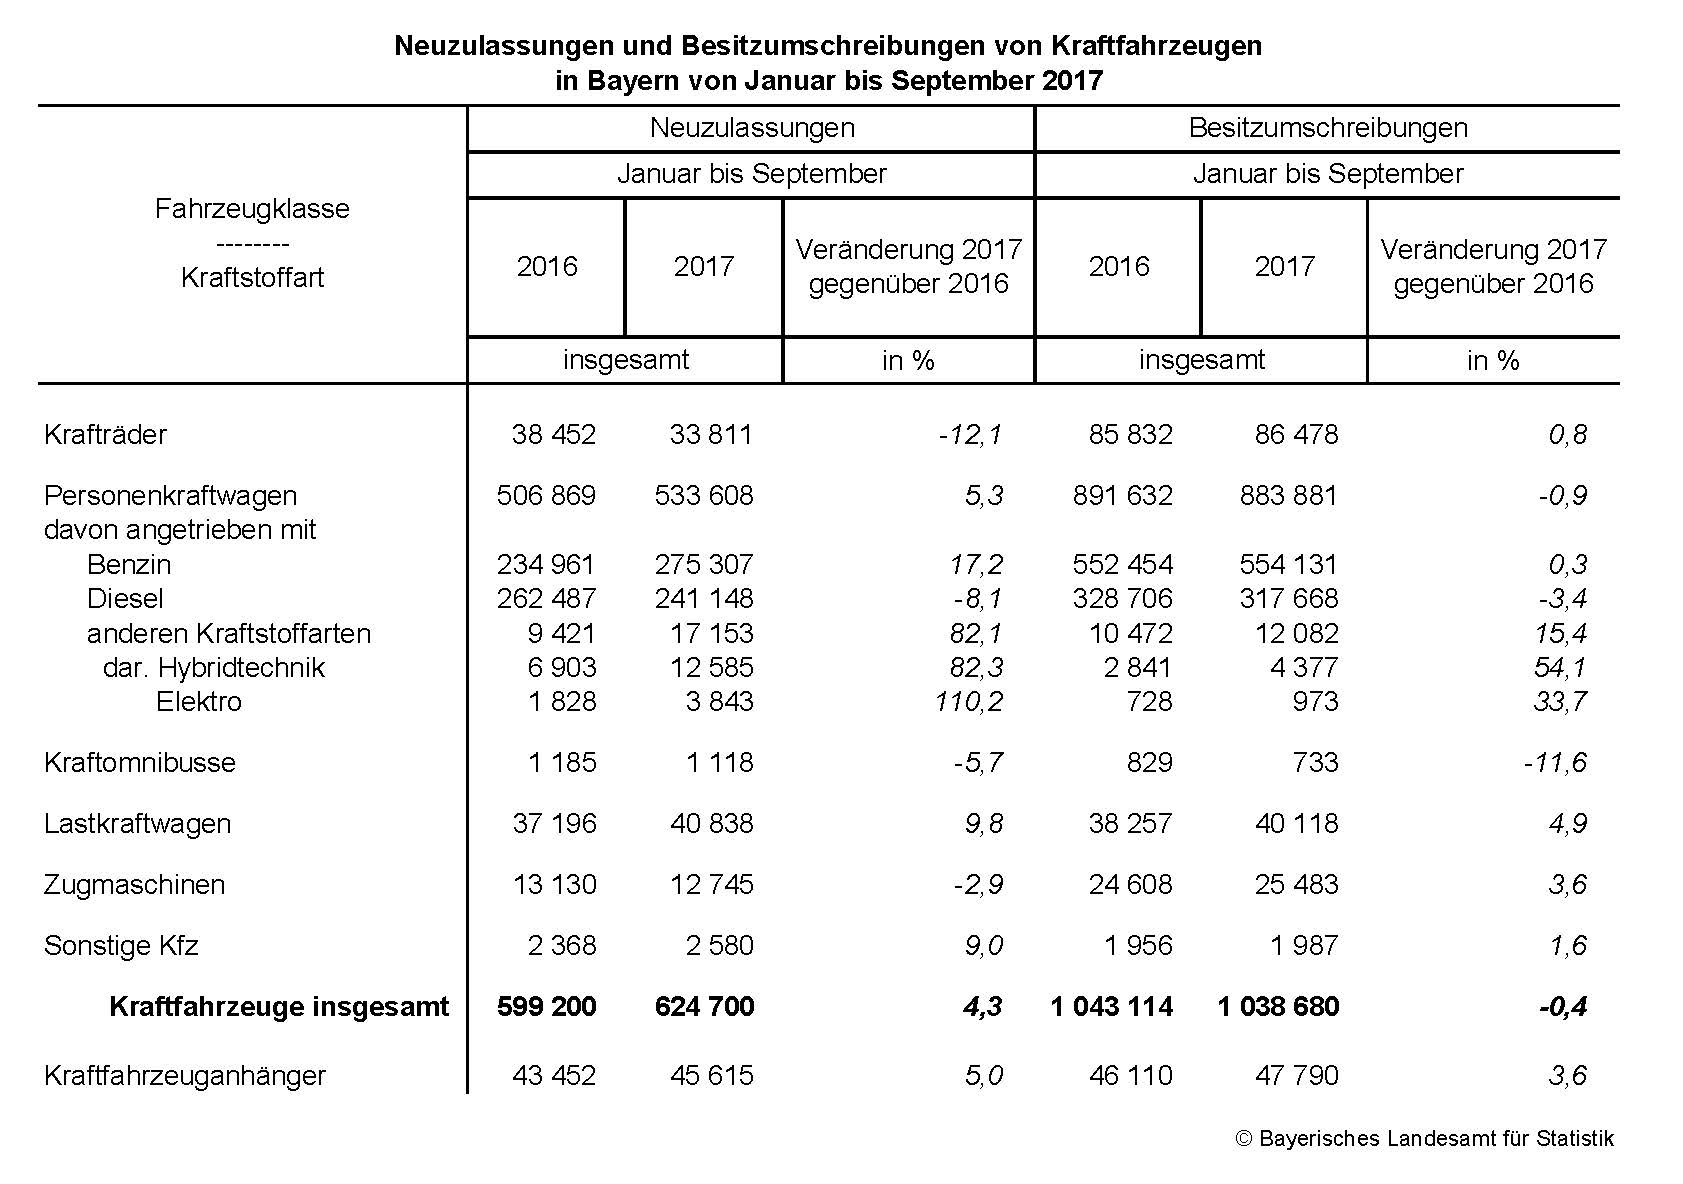 Neuzulassungen und Besitzumschreibungen von Kraftfahrzeugen in Bayern von Januar bis September 2017